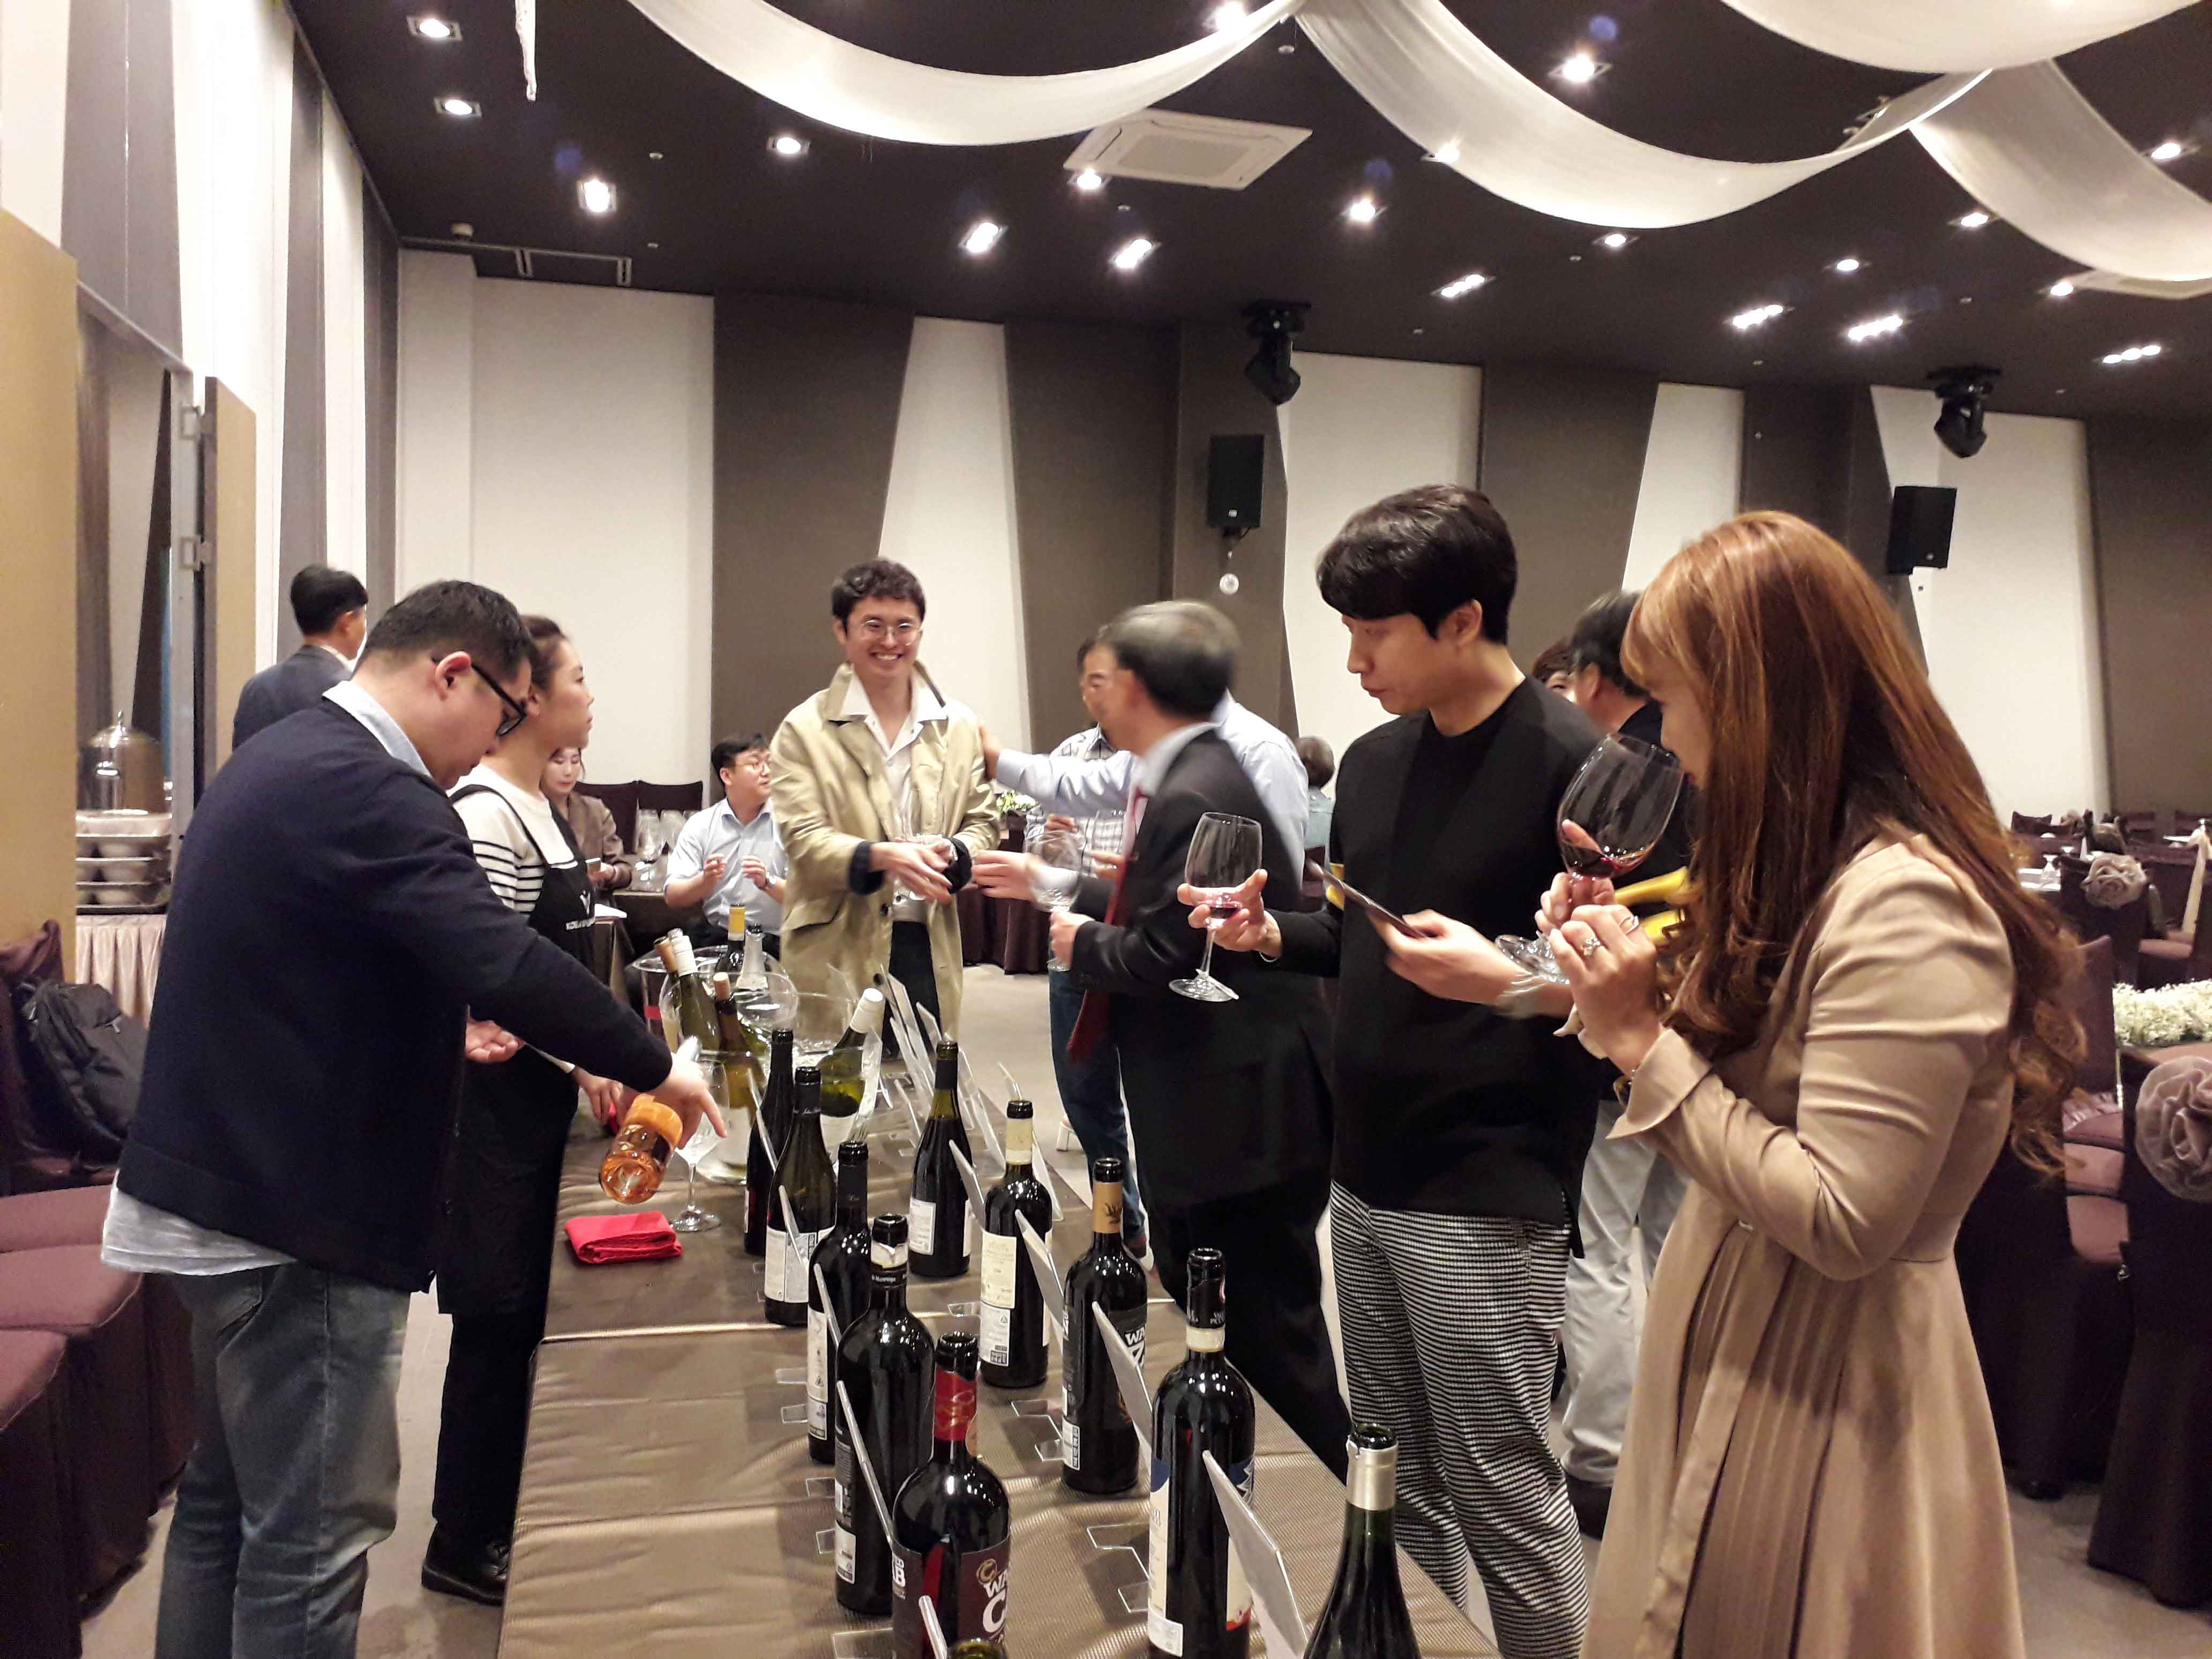 KWC 2019 Award Winning Wines Tasting Event in Jeonju Province